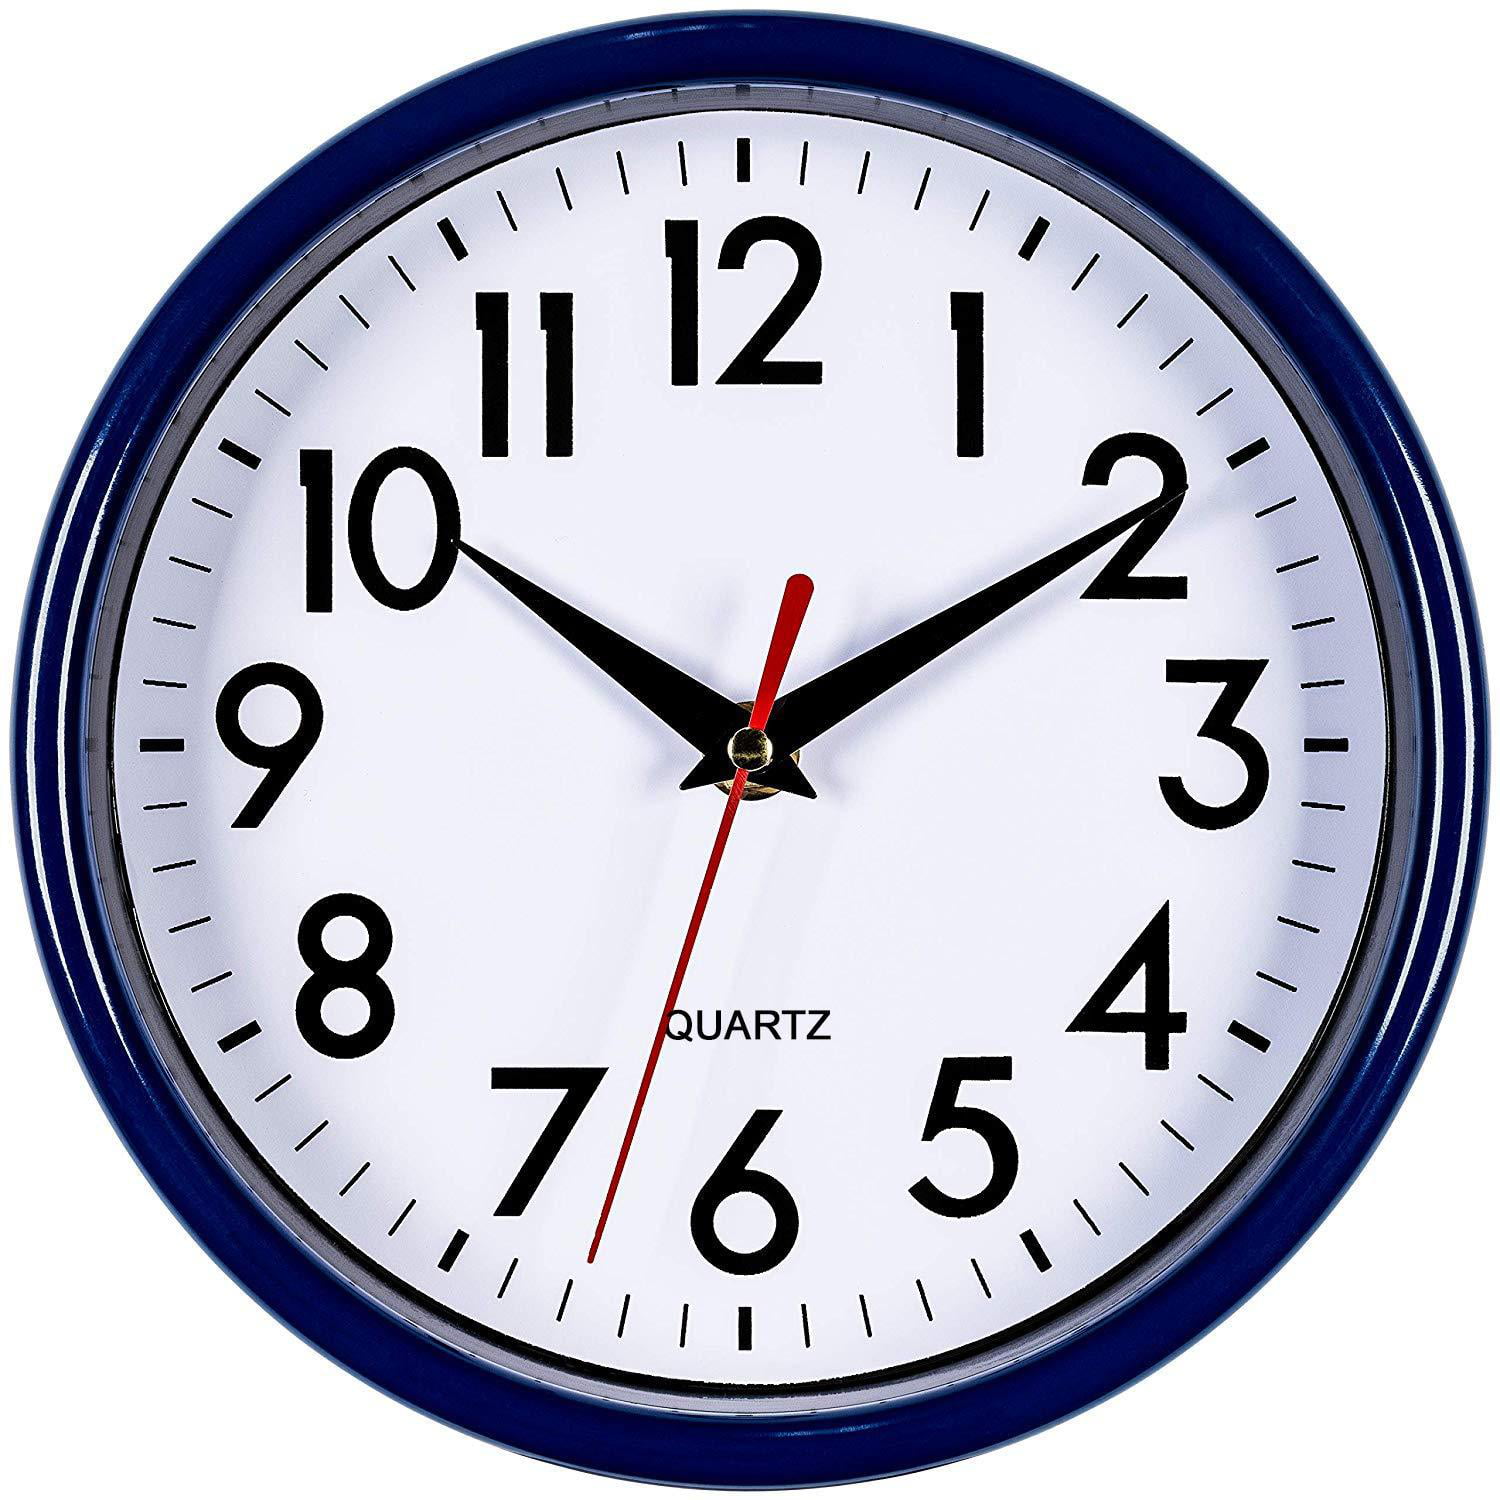 Details about   № 8 Quartz Clock Mechanism Silent Noiseless clockwise Set Silver Black Red Yellow Blue show original title 